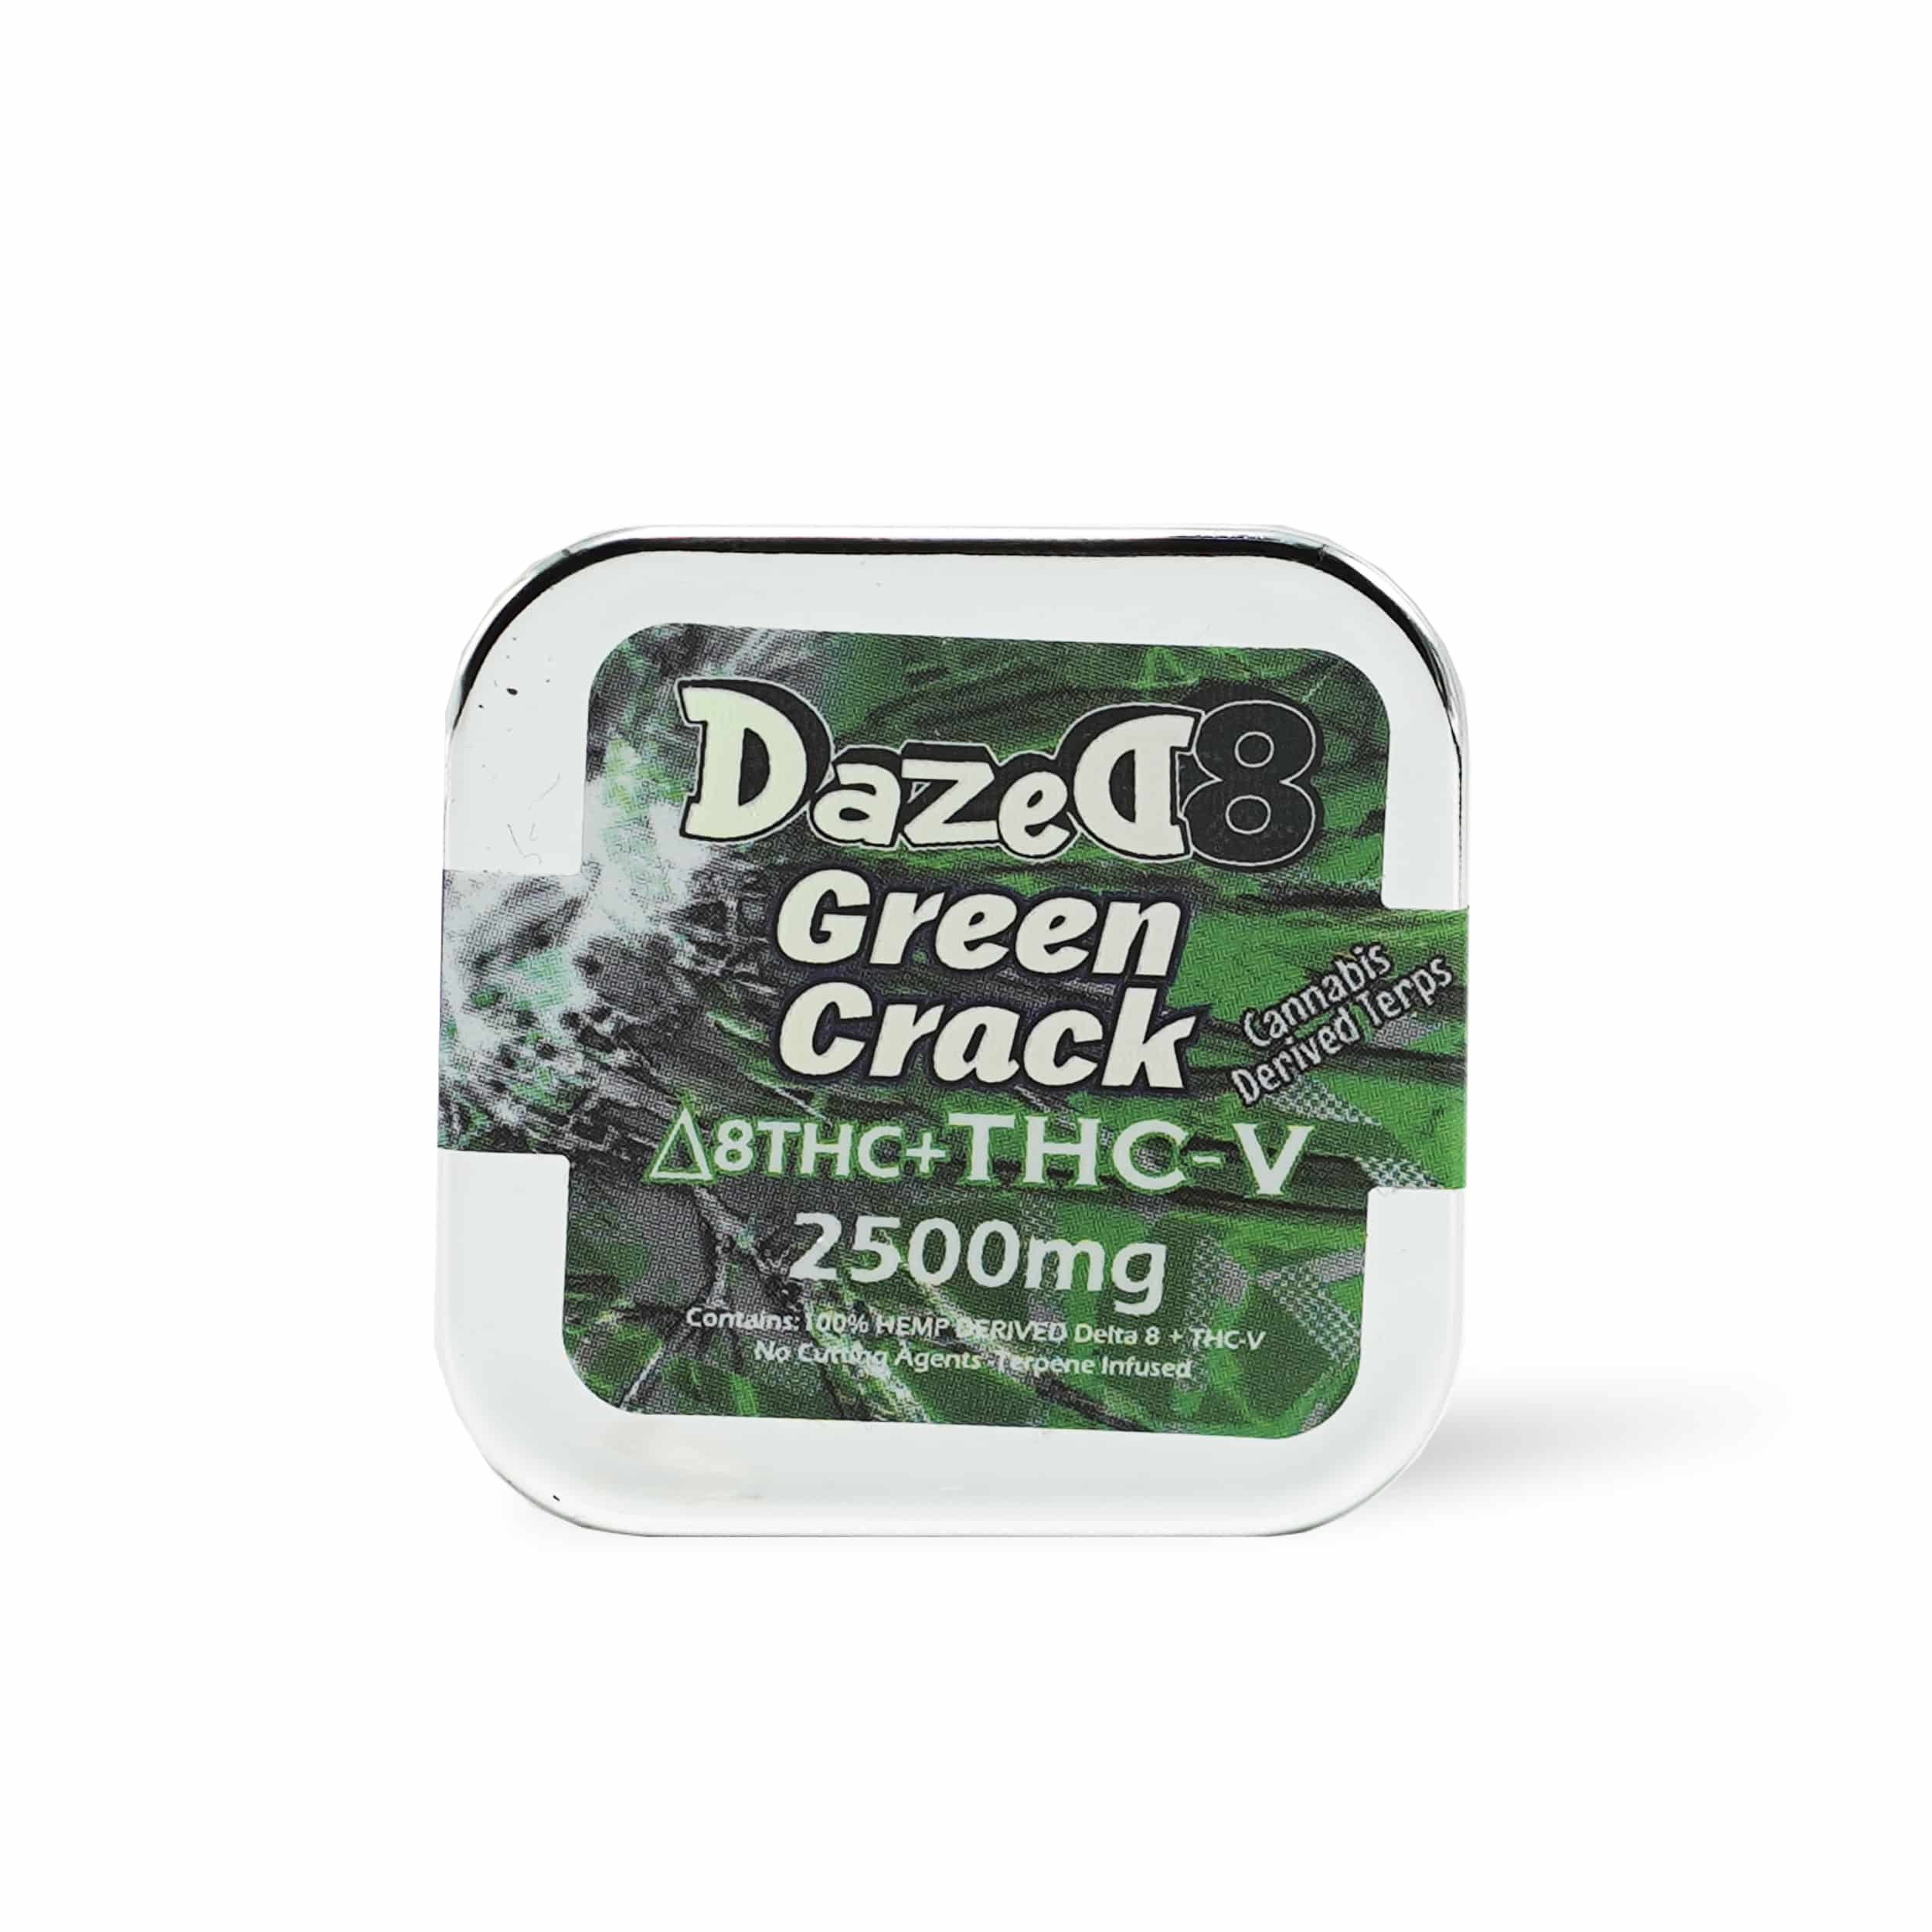 DazeD8 Green Crack THCV Dab (2.5g) Best Price